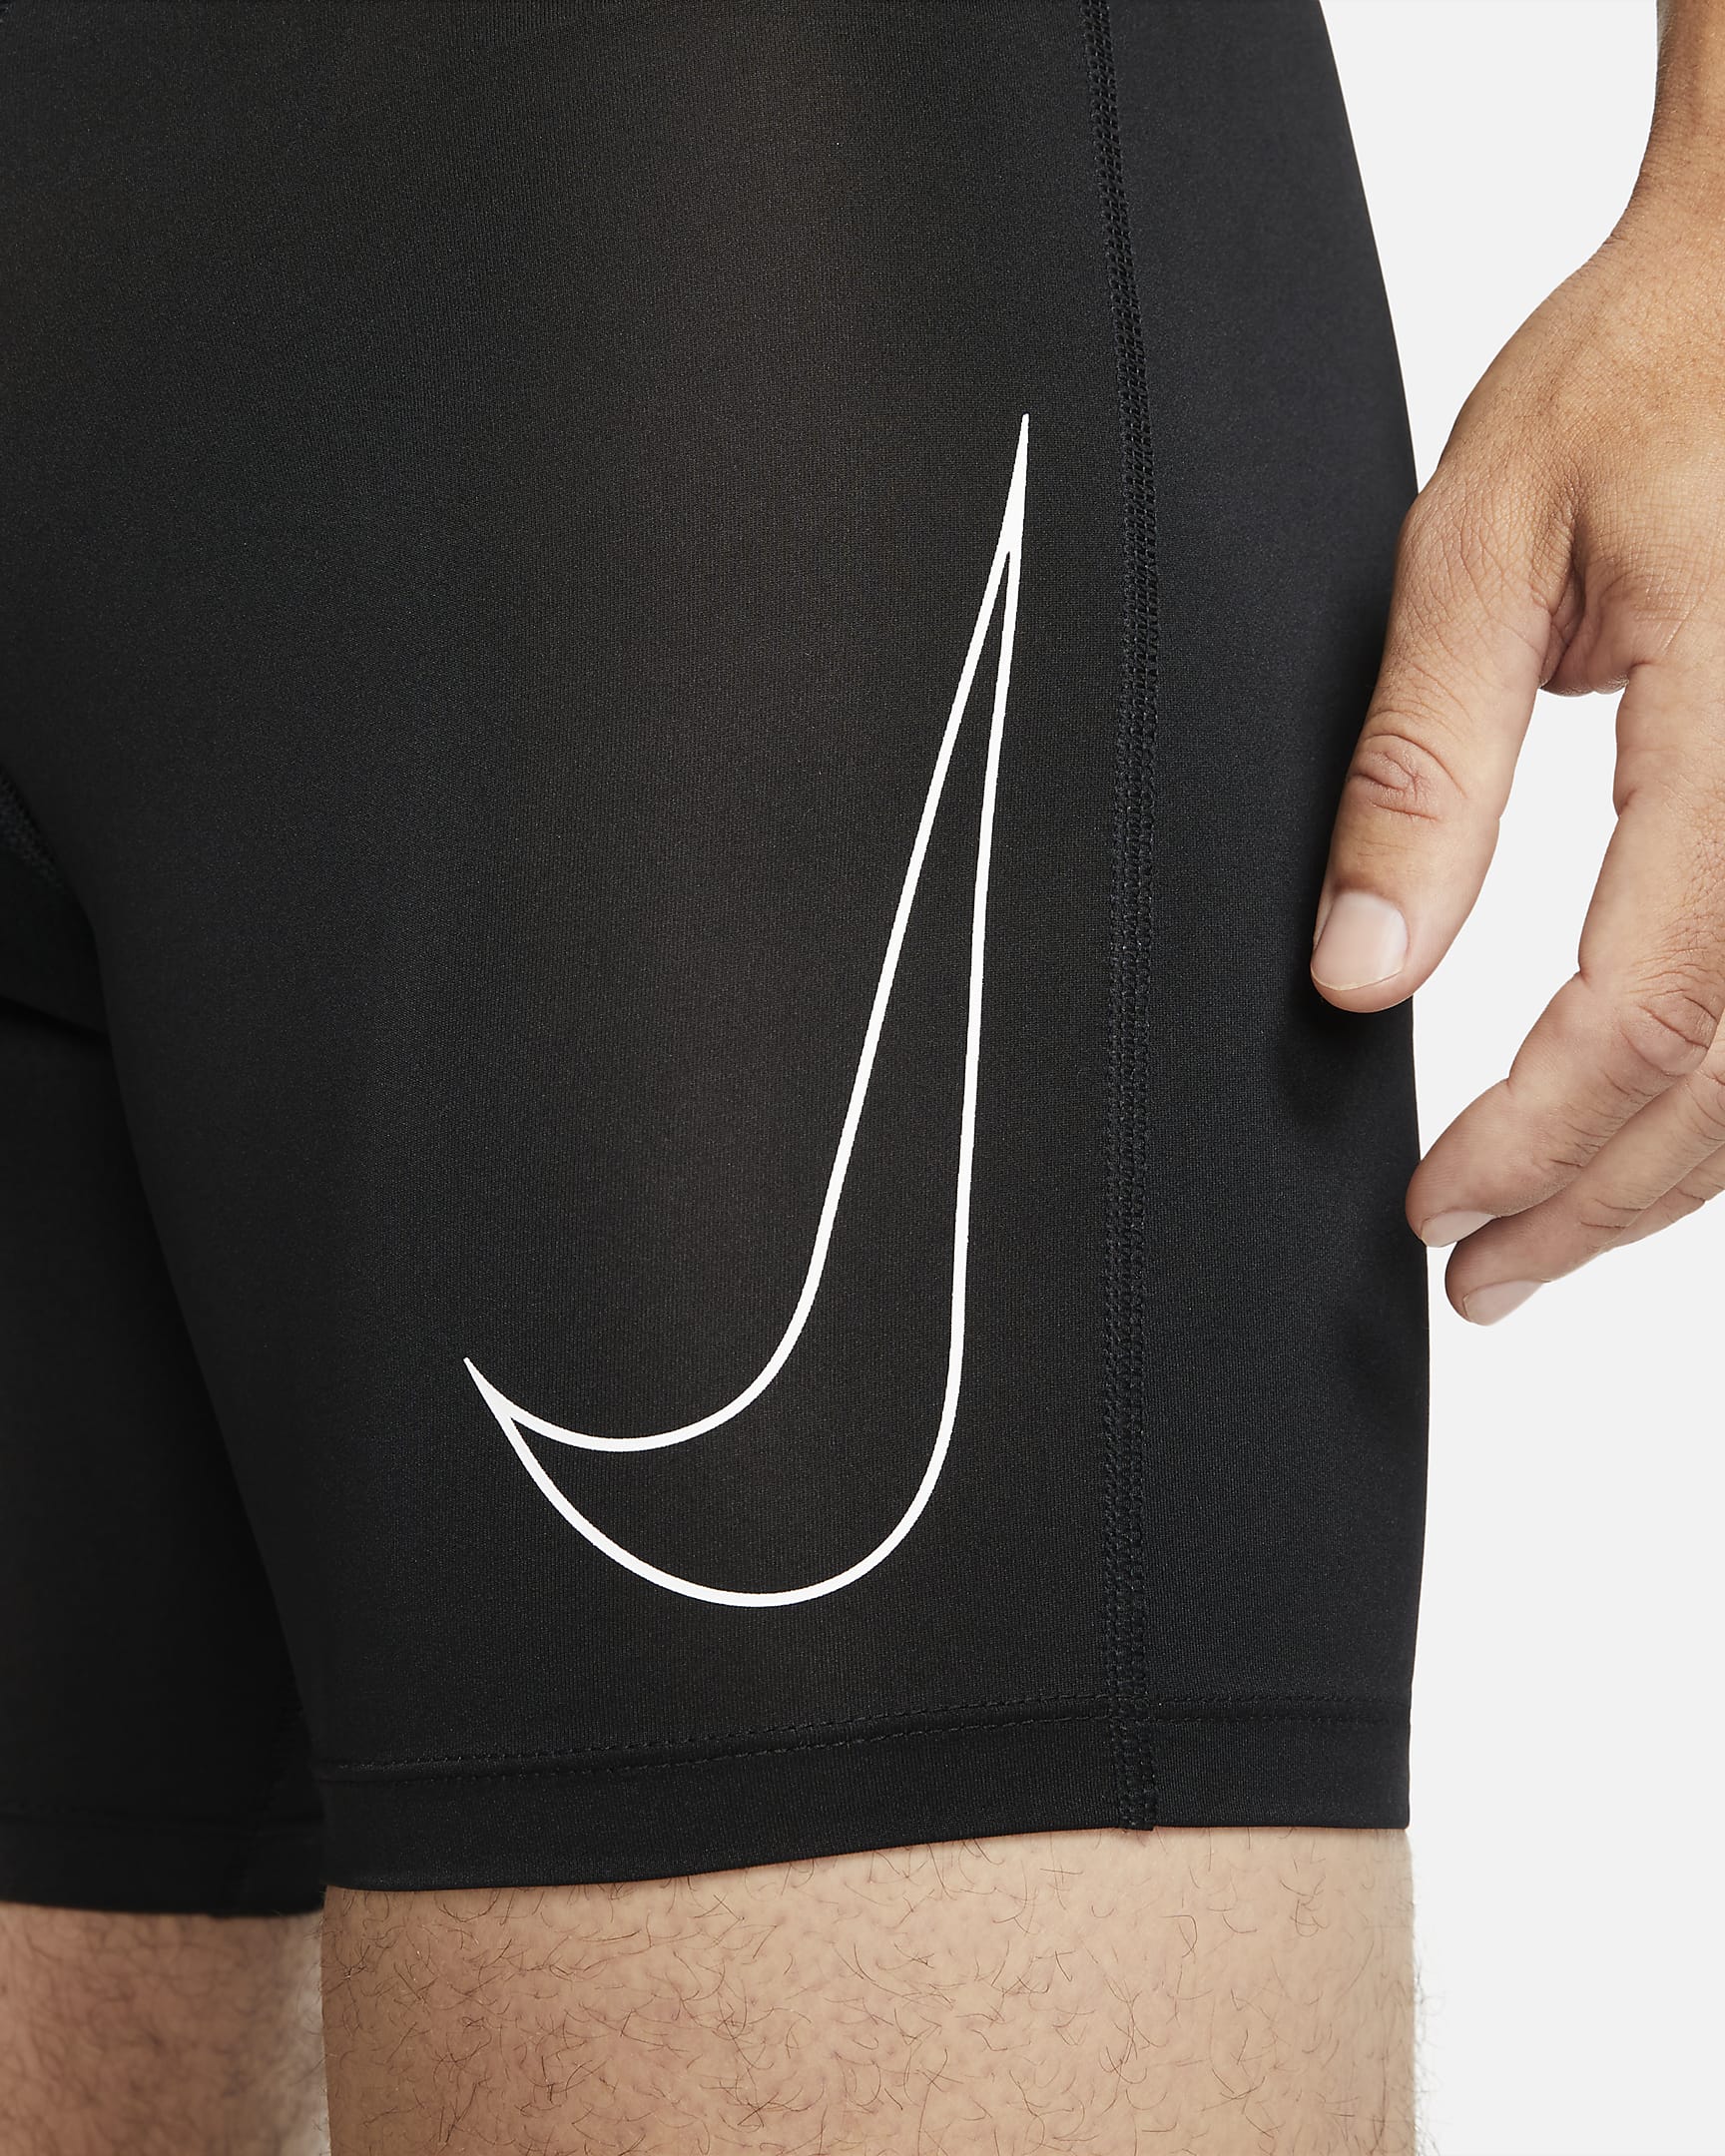 Nike Pro Dri-FIT Men's Shorts - Black/White